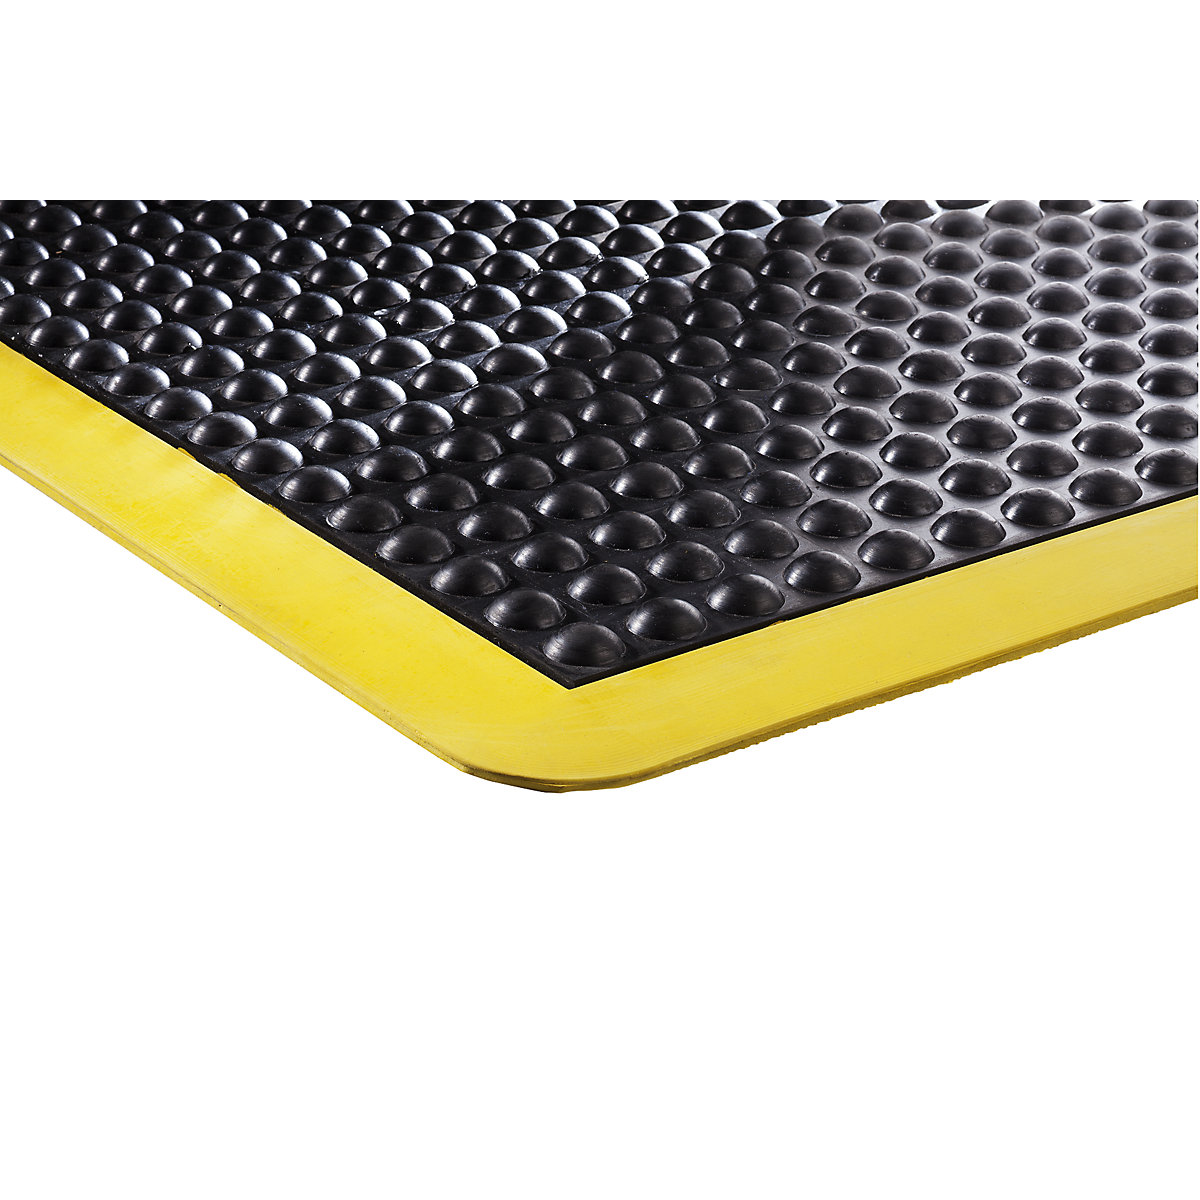 Anti-vermoeidheidsmat Bubblemat safety – COBA, l x b x h = 900 x 600 x 14 mm, zwart/geel, begin-/eindelement-1